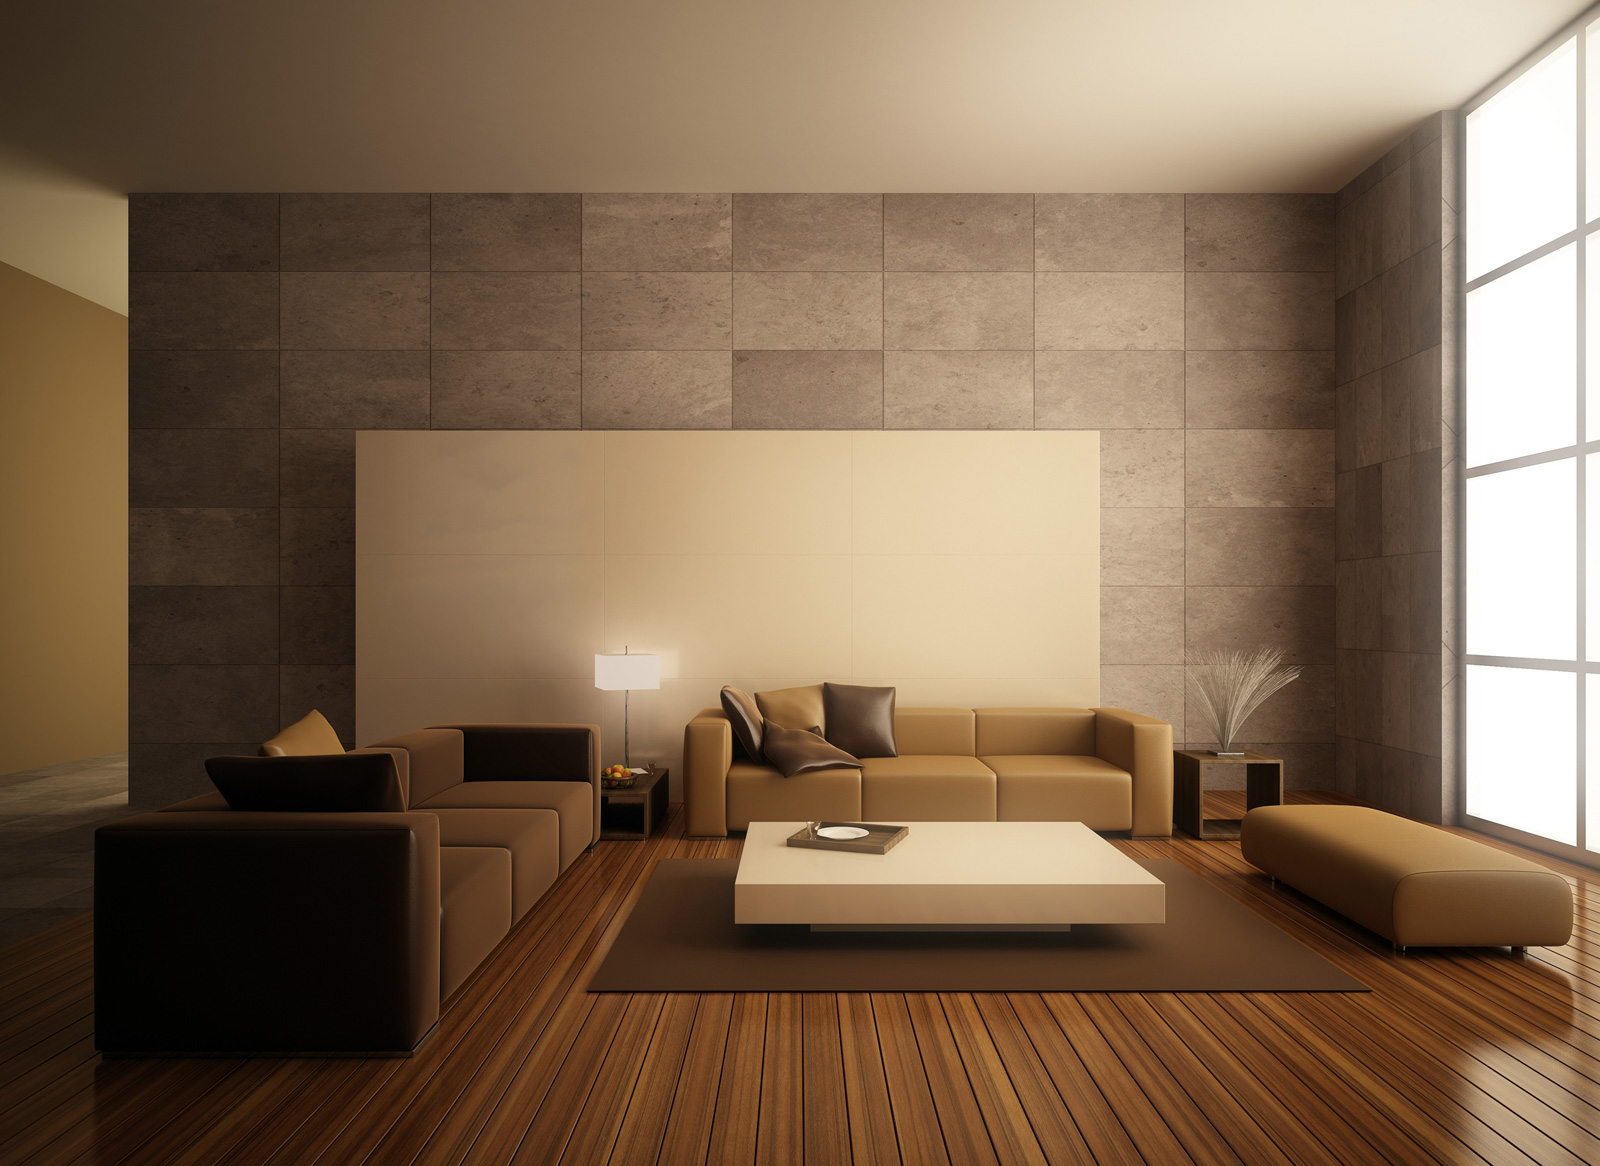 16 breathtaking minimalist interior design ideas for Siti di interior design